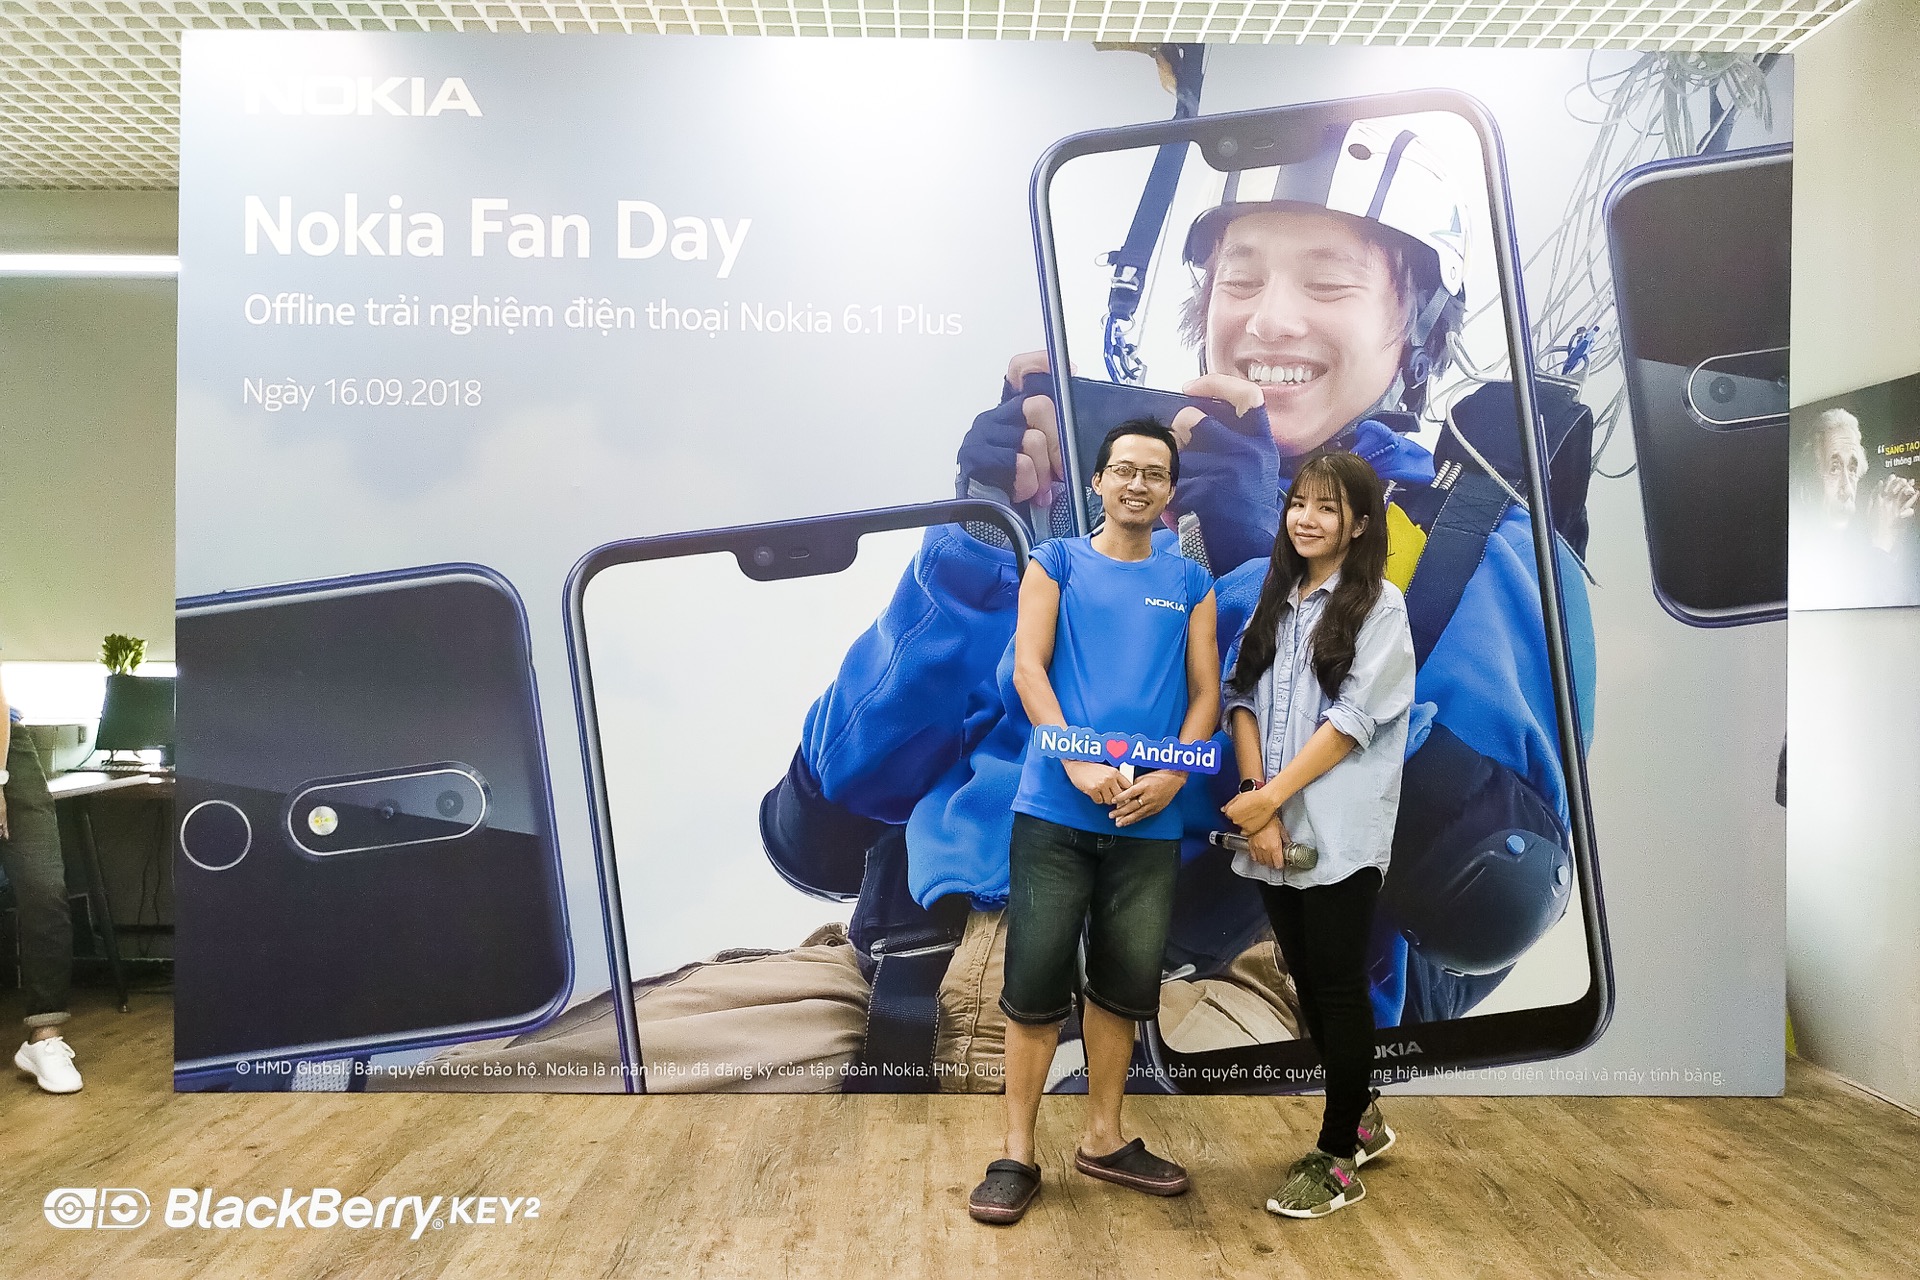 Offline Nokia Fan Day